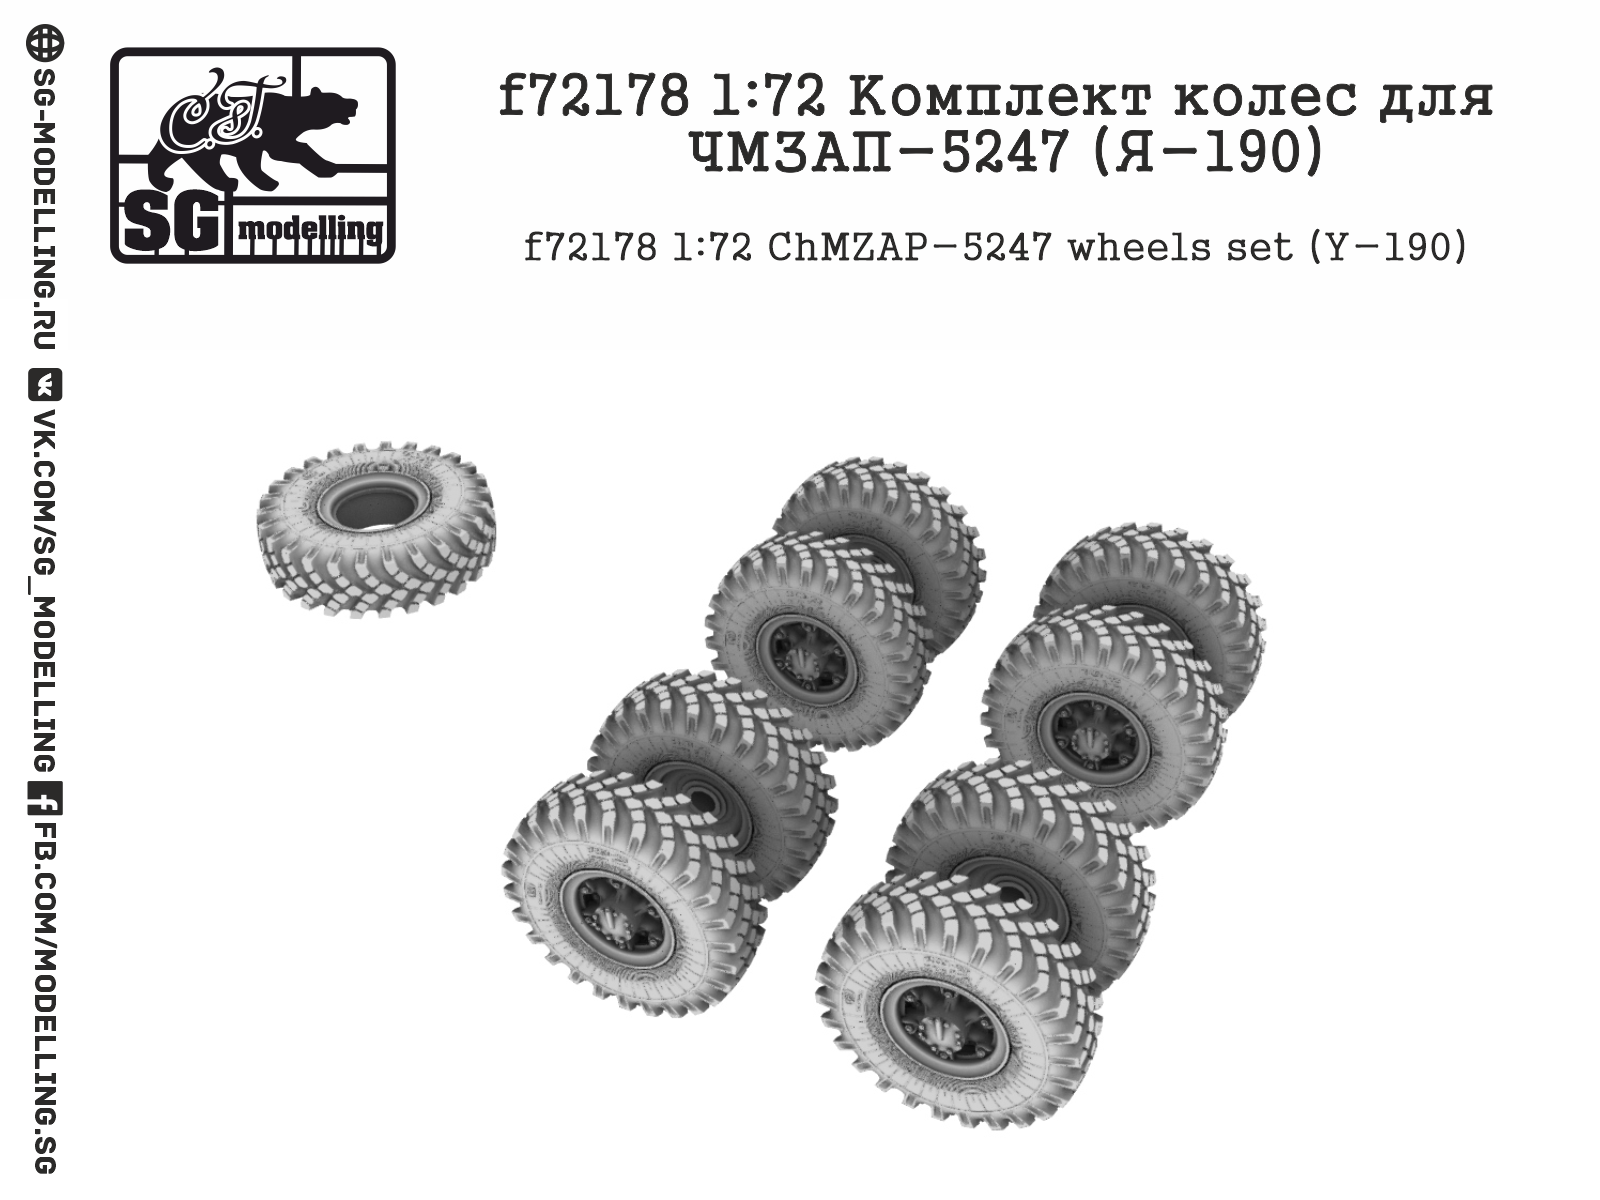 ChMZAP-5247 (Y-190) wheels